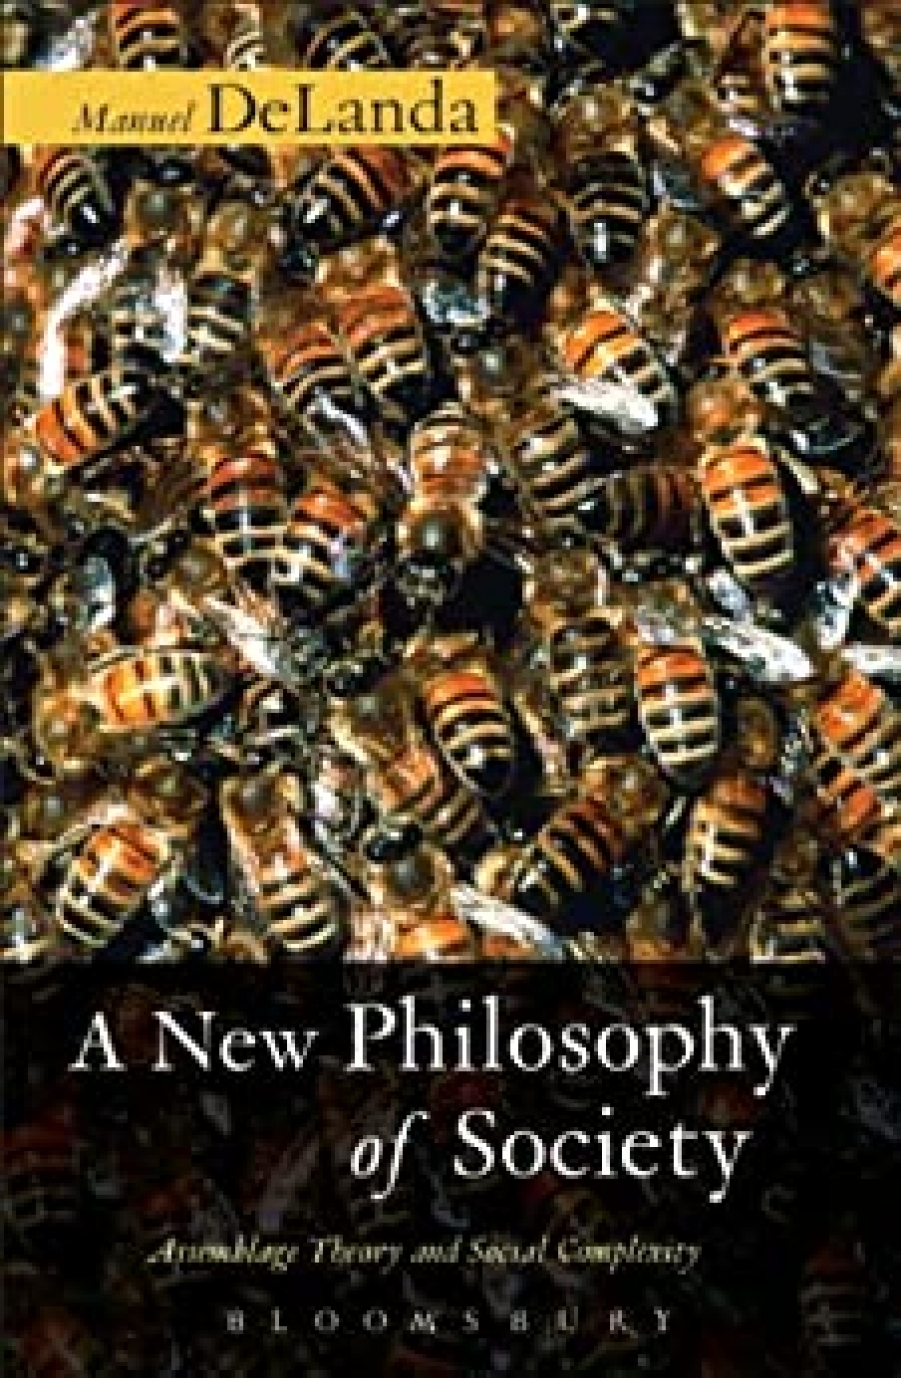 DeLanda,Manuel BR:New Philosophy of Society, A 